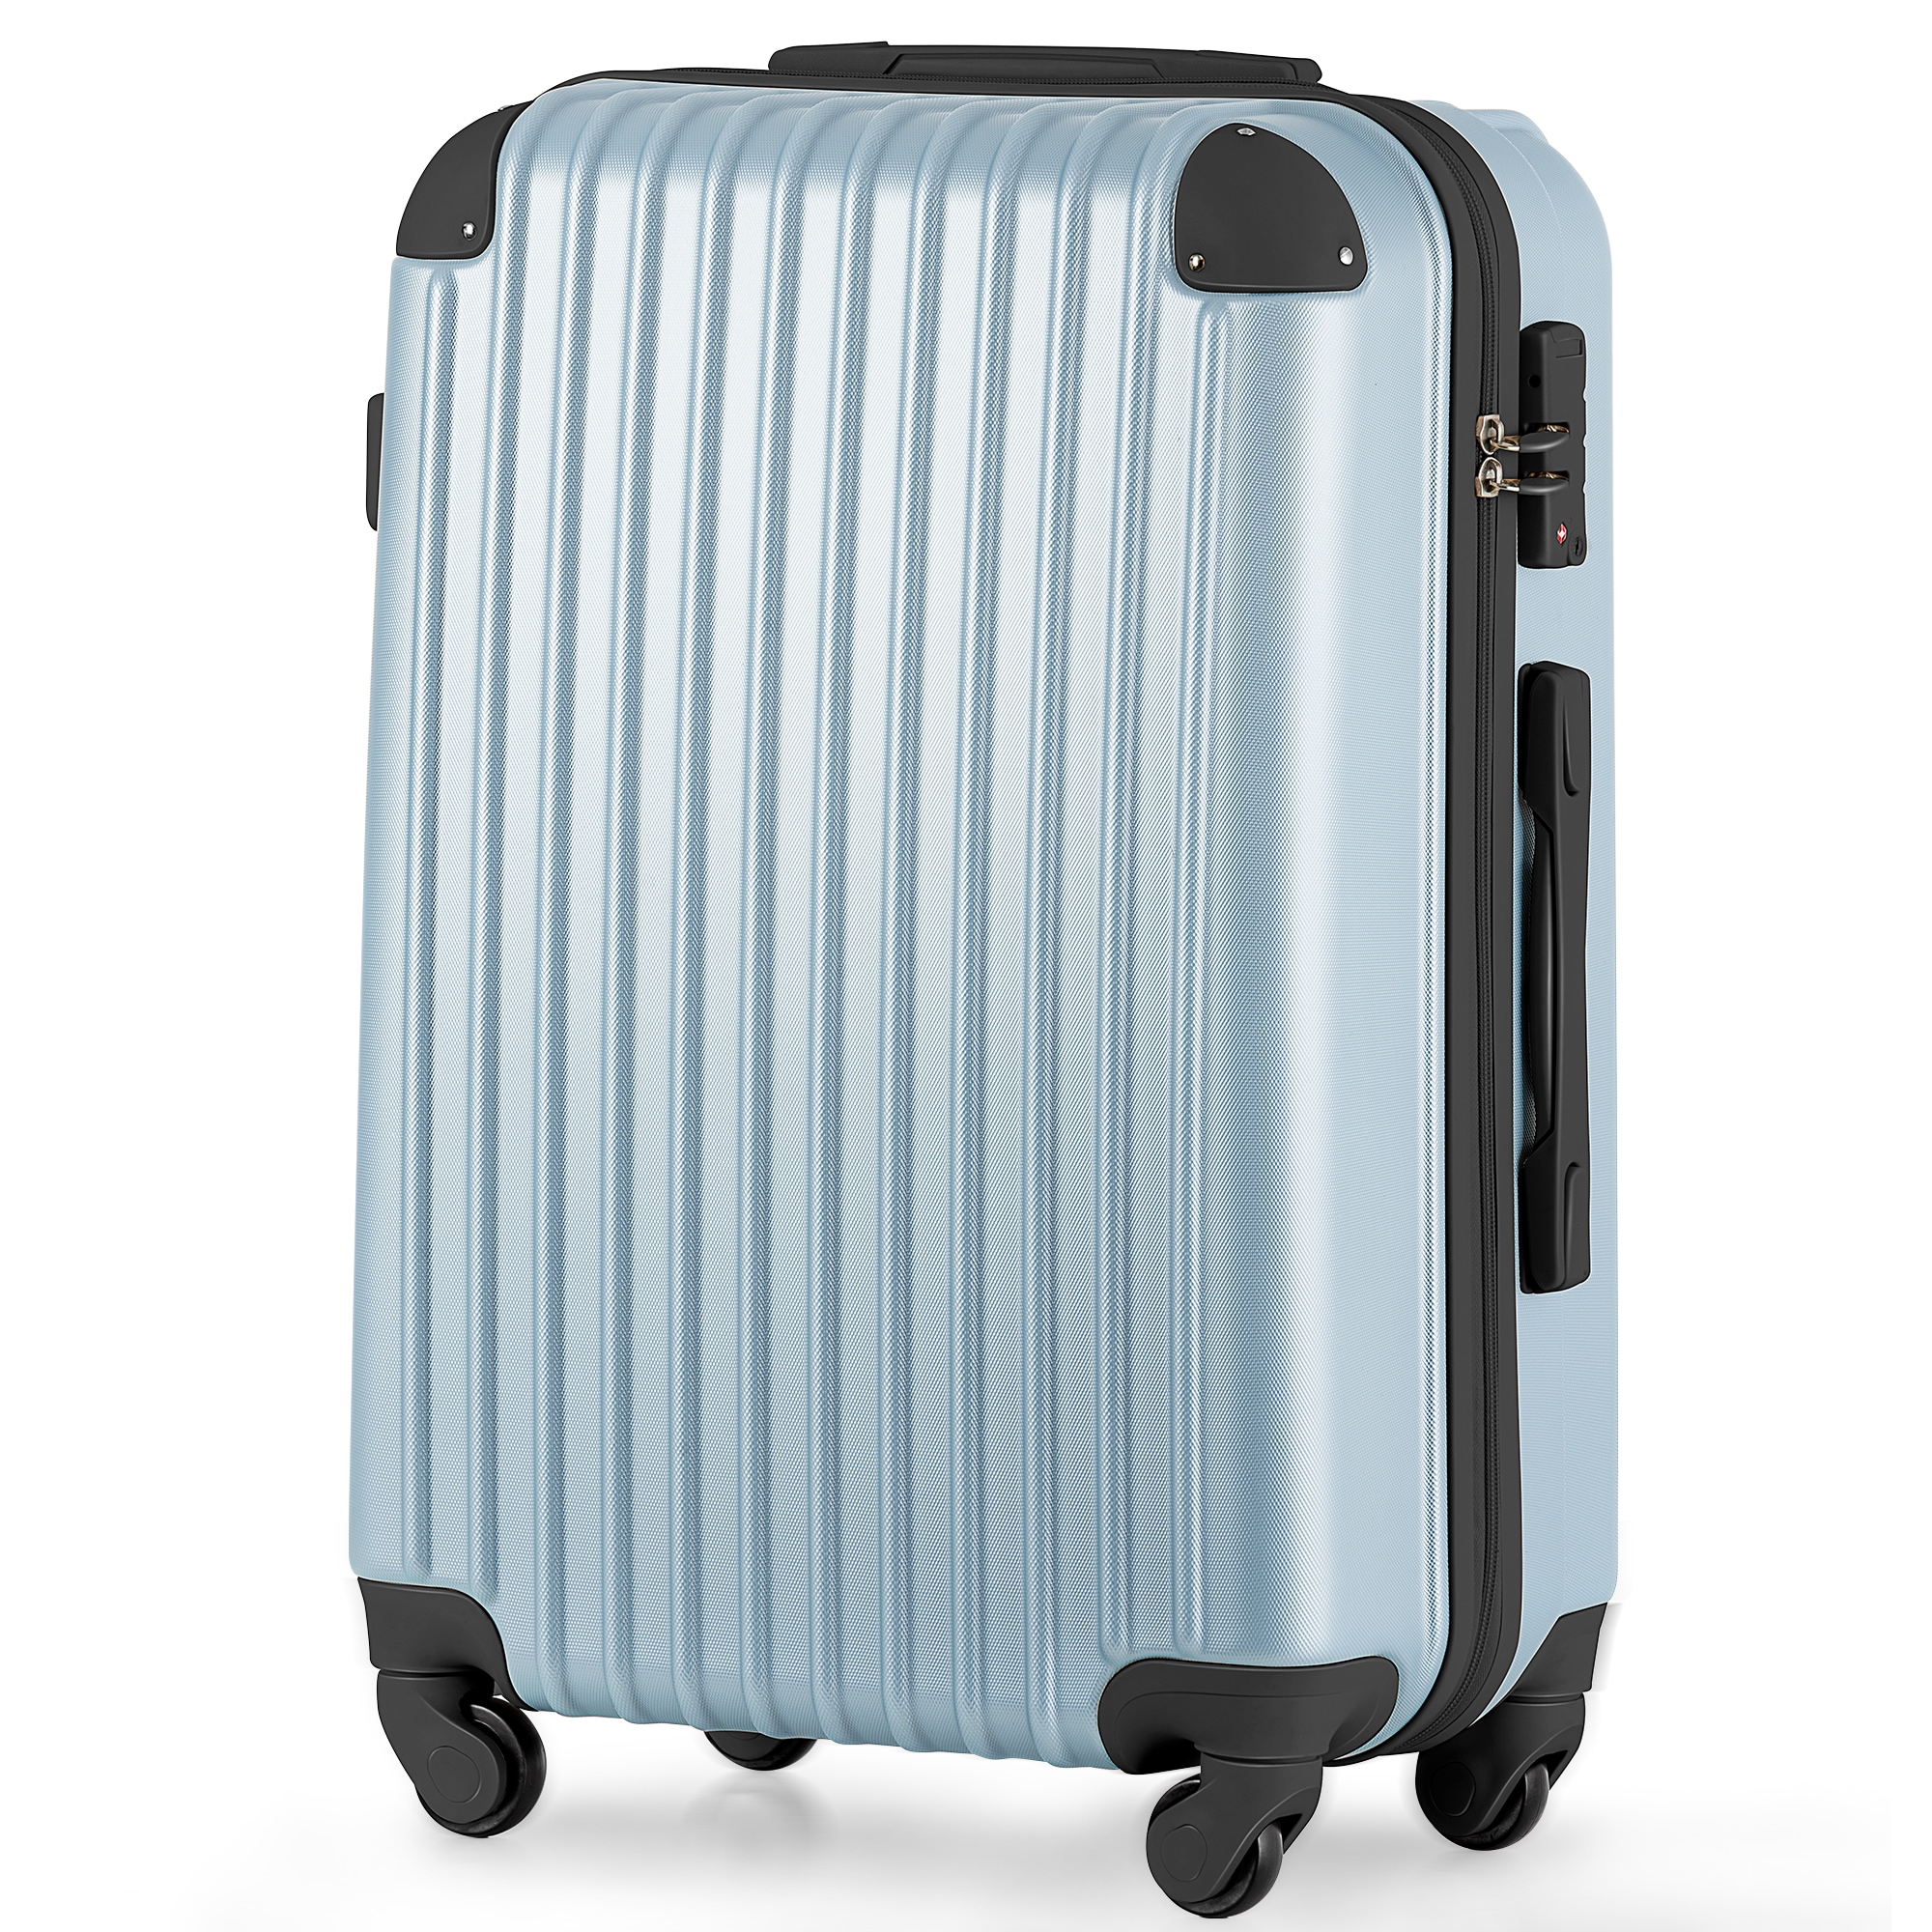 ファッションなデザイン キャリーバッグ スーツケース Mサイズ キャリーケース キャリーケス 軽量 Mサイズ スーツケース 1年間保証 中型  4日-7日 TSAロック搭載 超軽量 キャリーバッグ